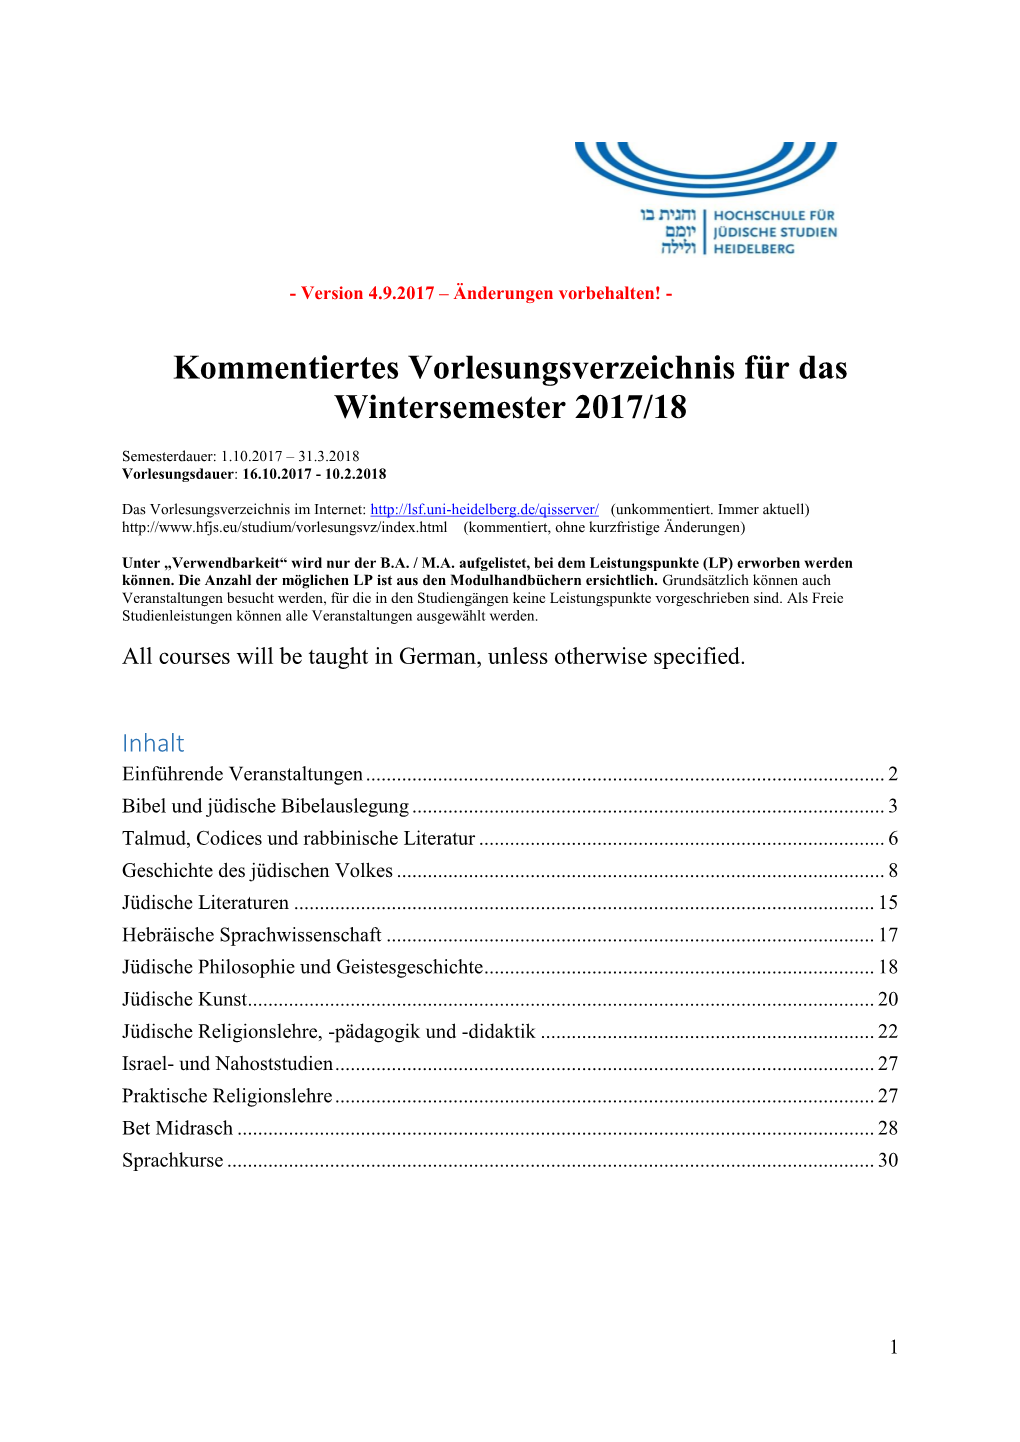 Kommentiertes Vorlesungsverzeichnis Für Das Wintersemester 2017/18